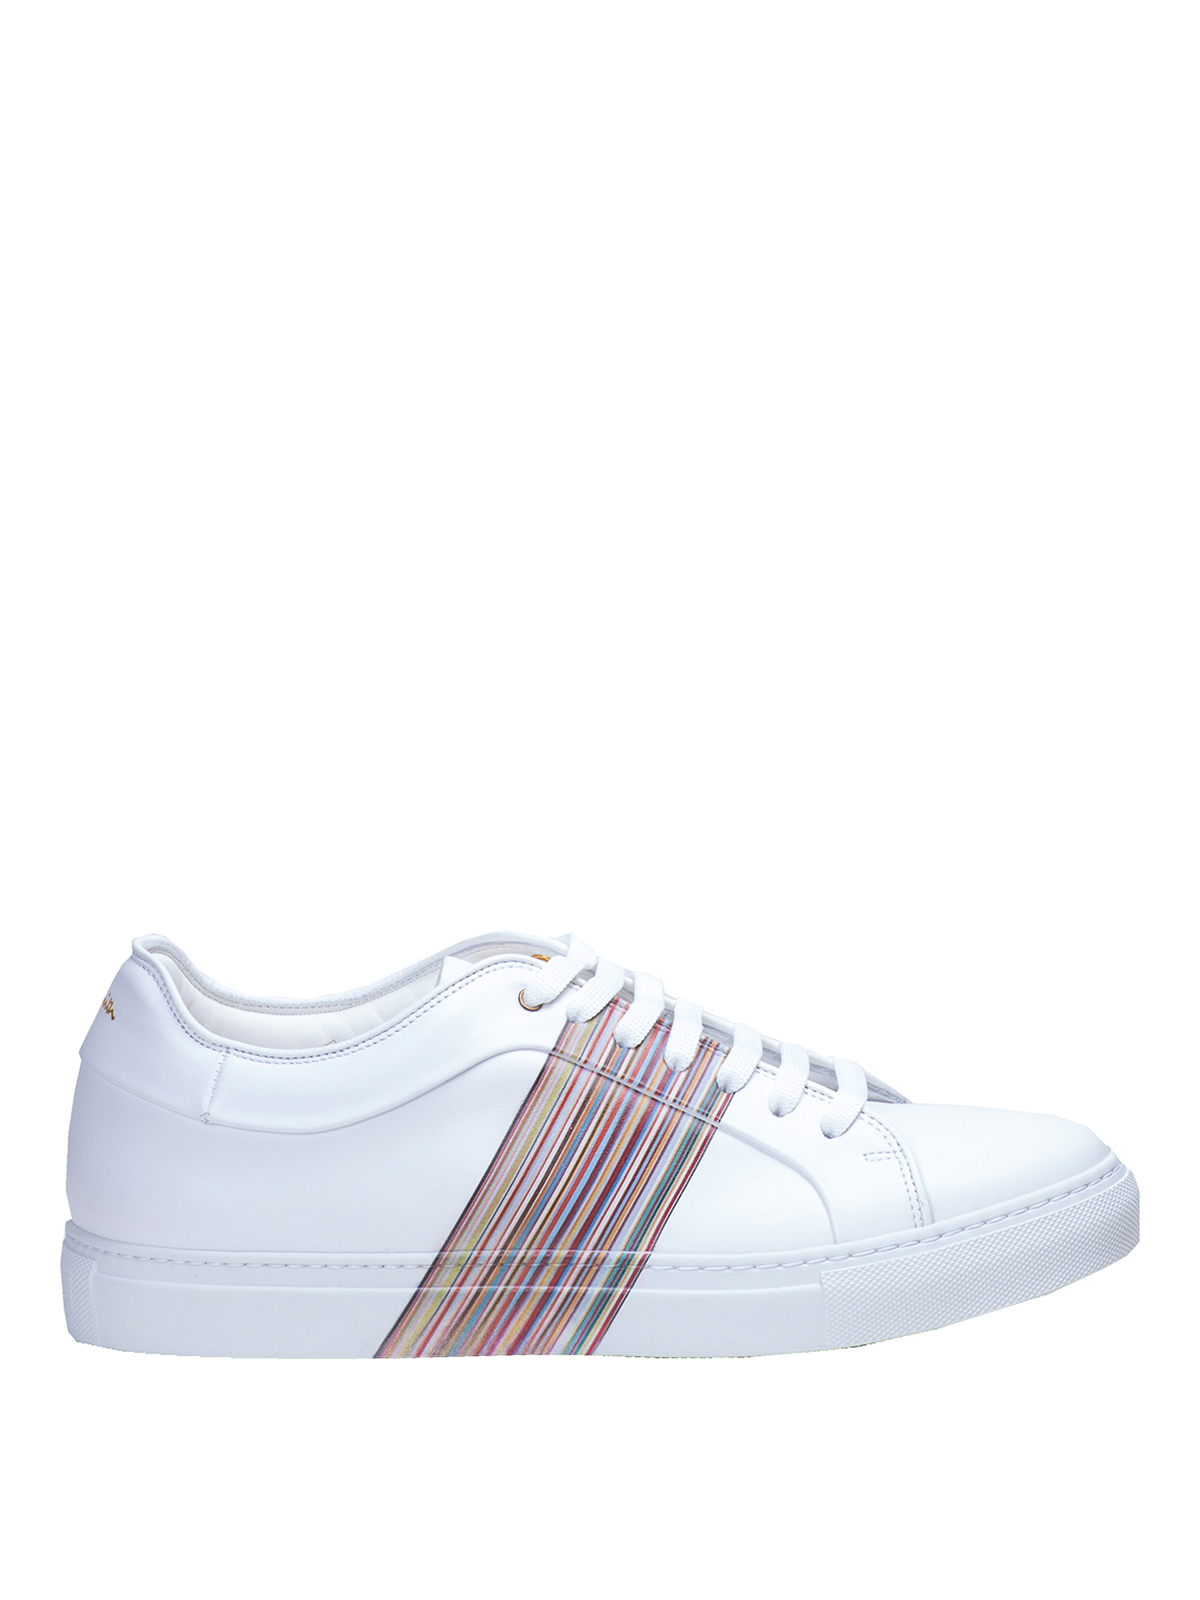 Paul Smith Low Stripe Sneakers In Blanco